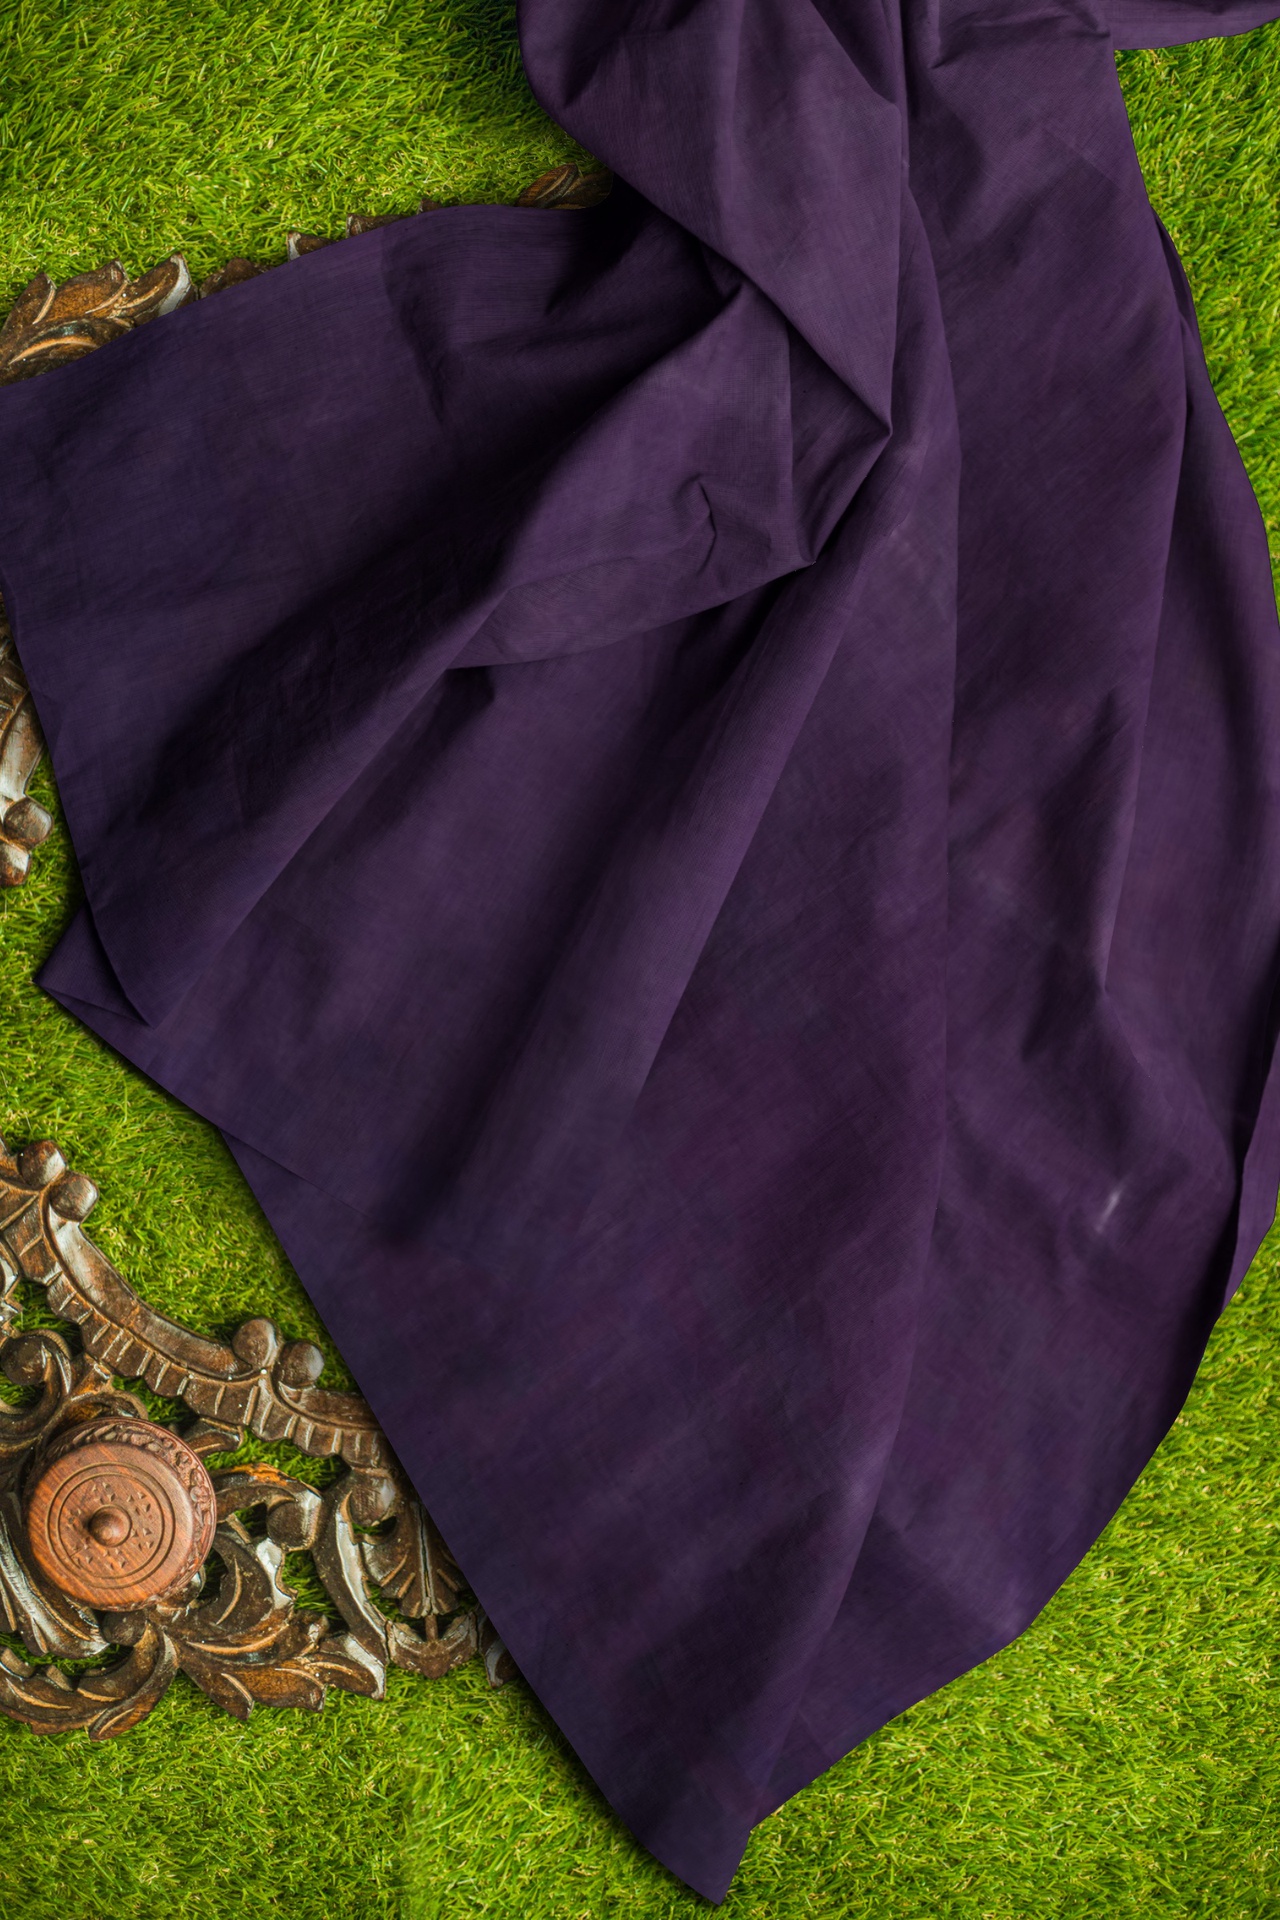 Grape Handspun Handwoven Fabric